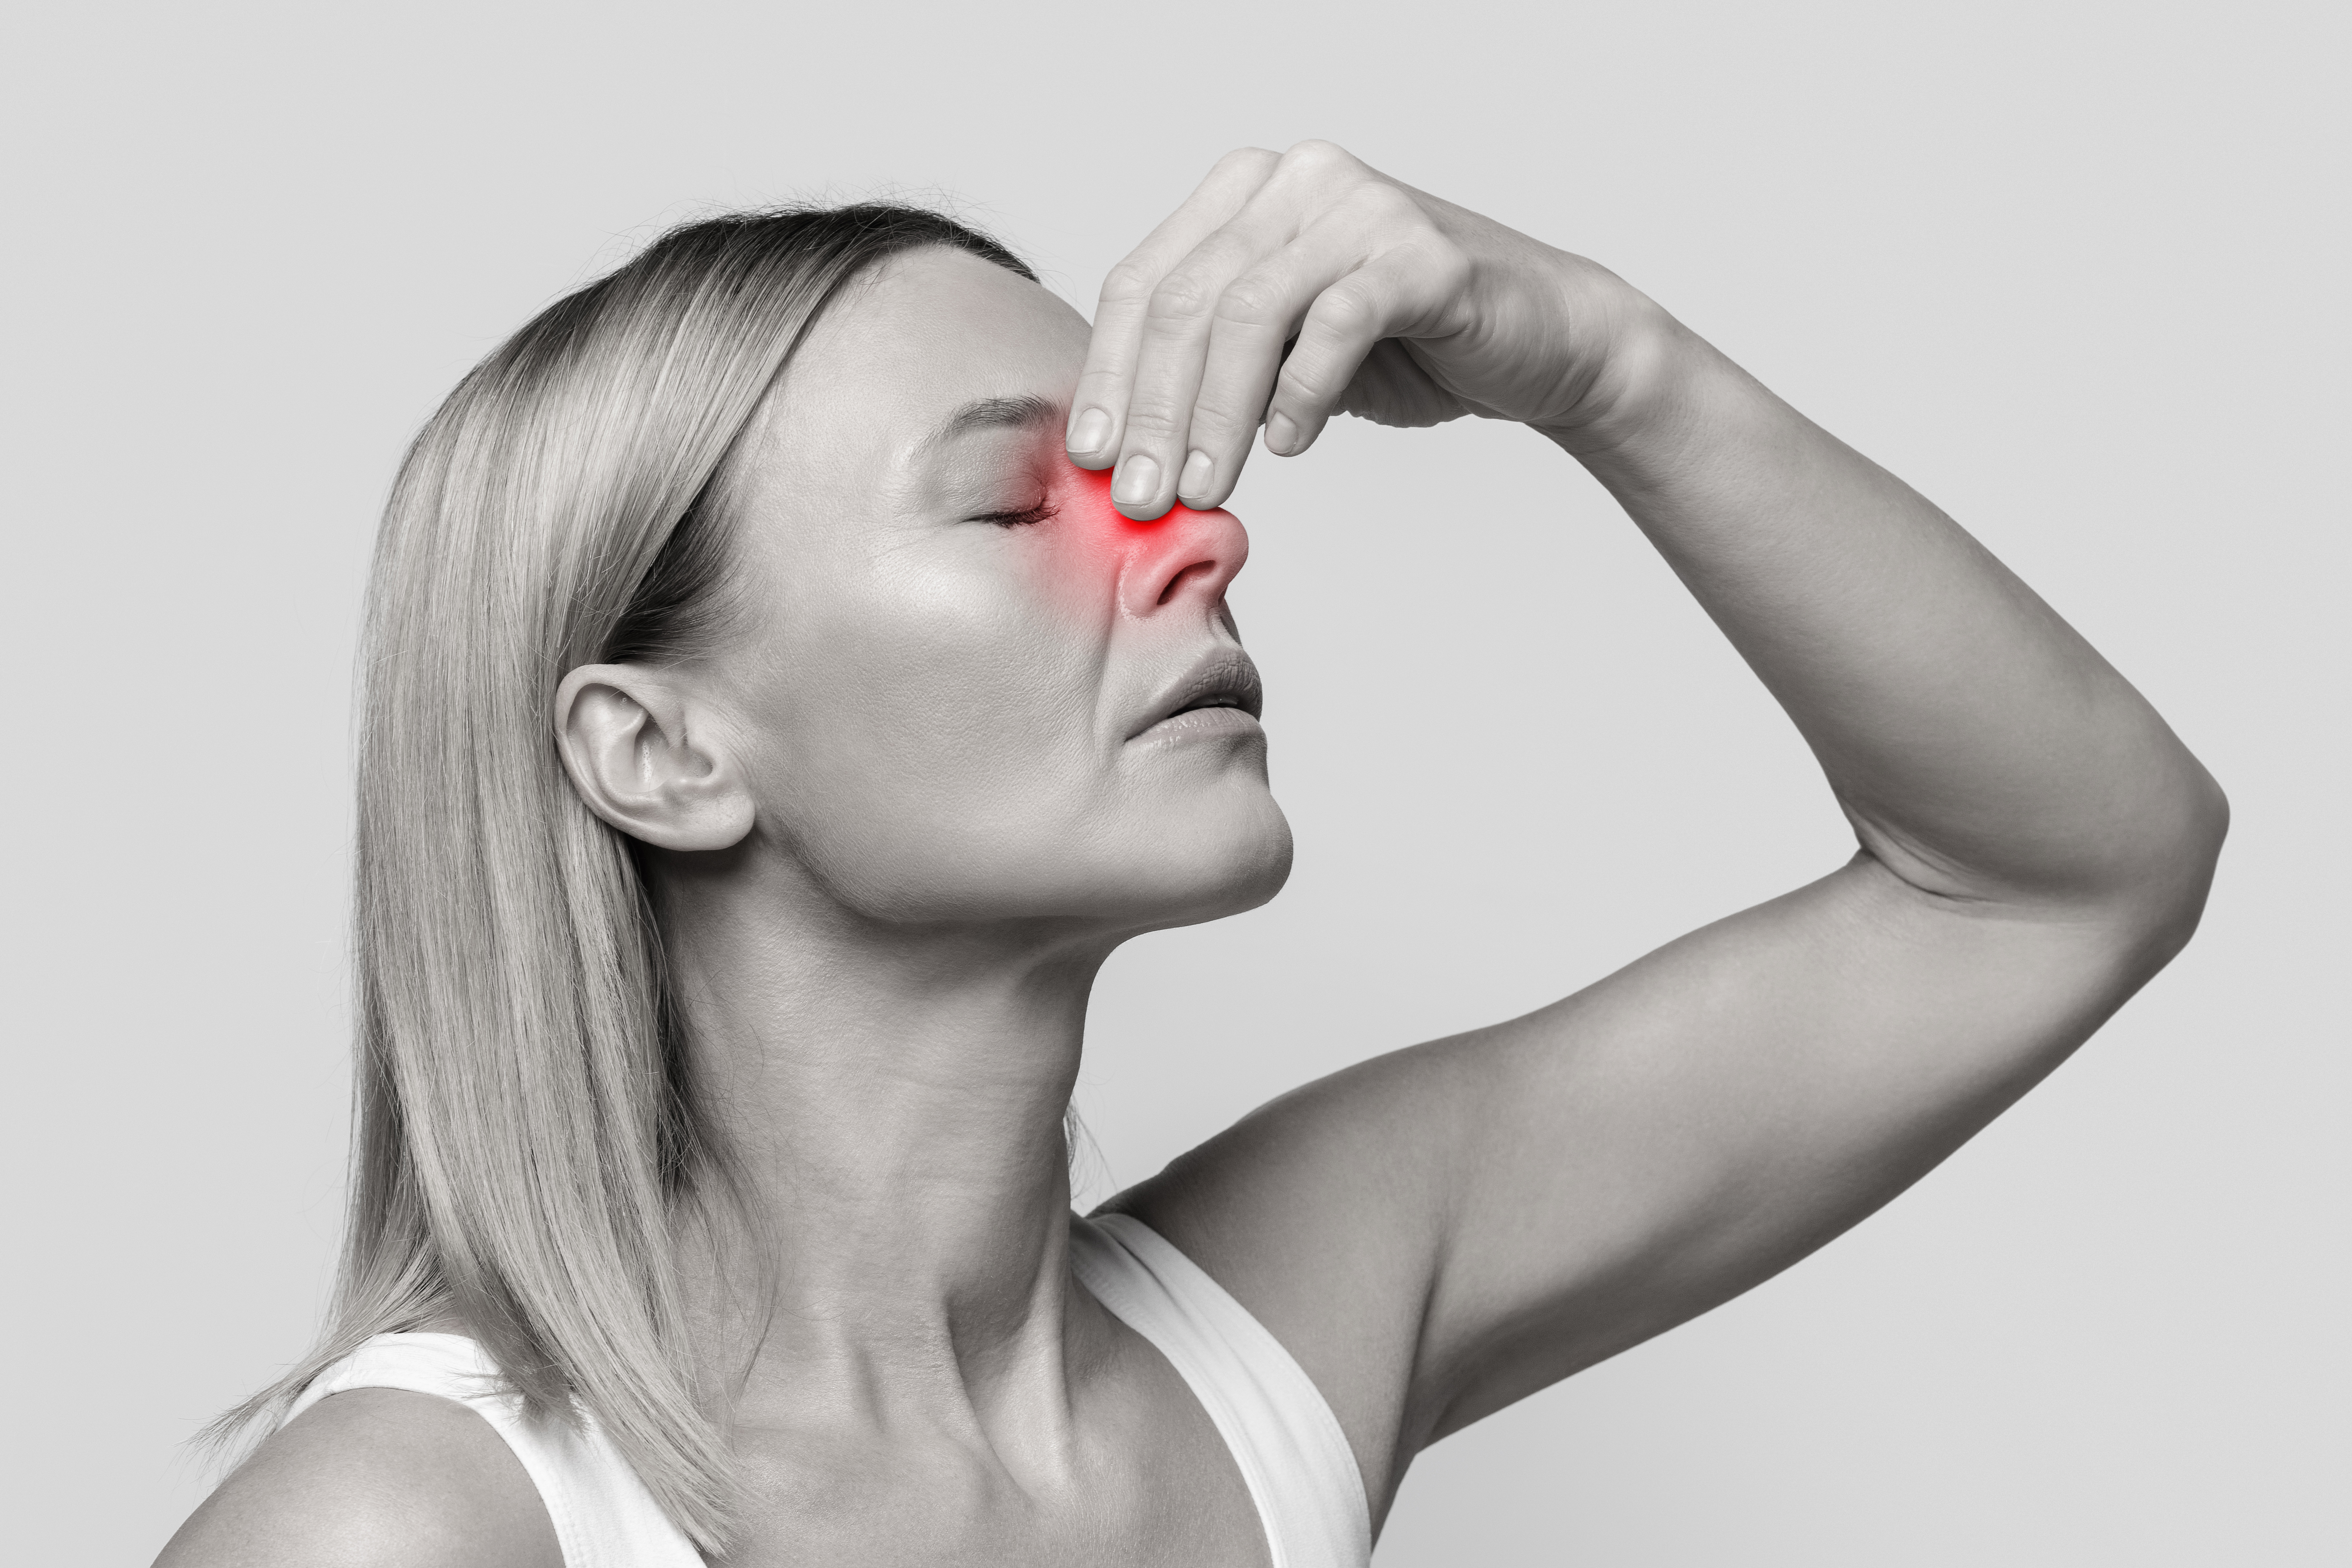 Entenda quais são os principais sintomas de sinusite